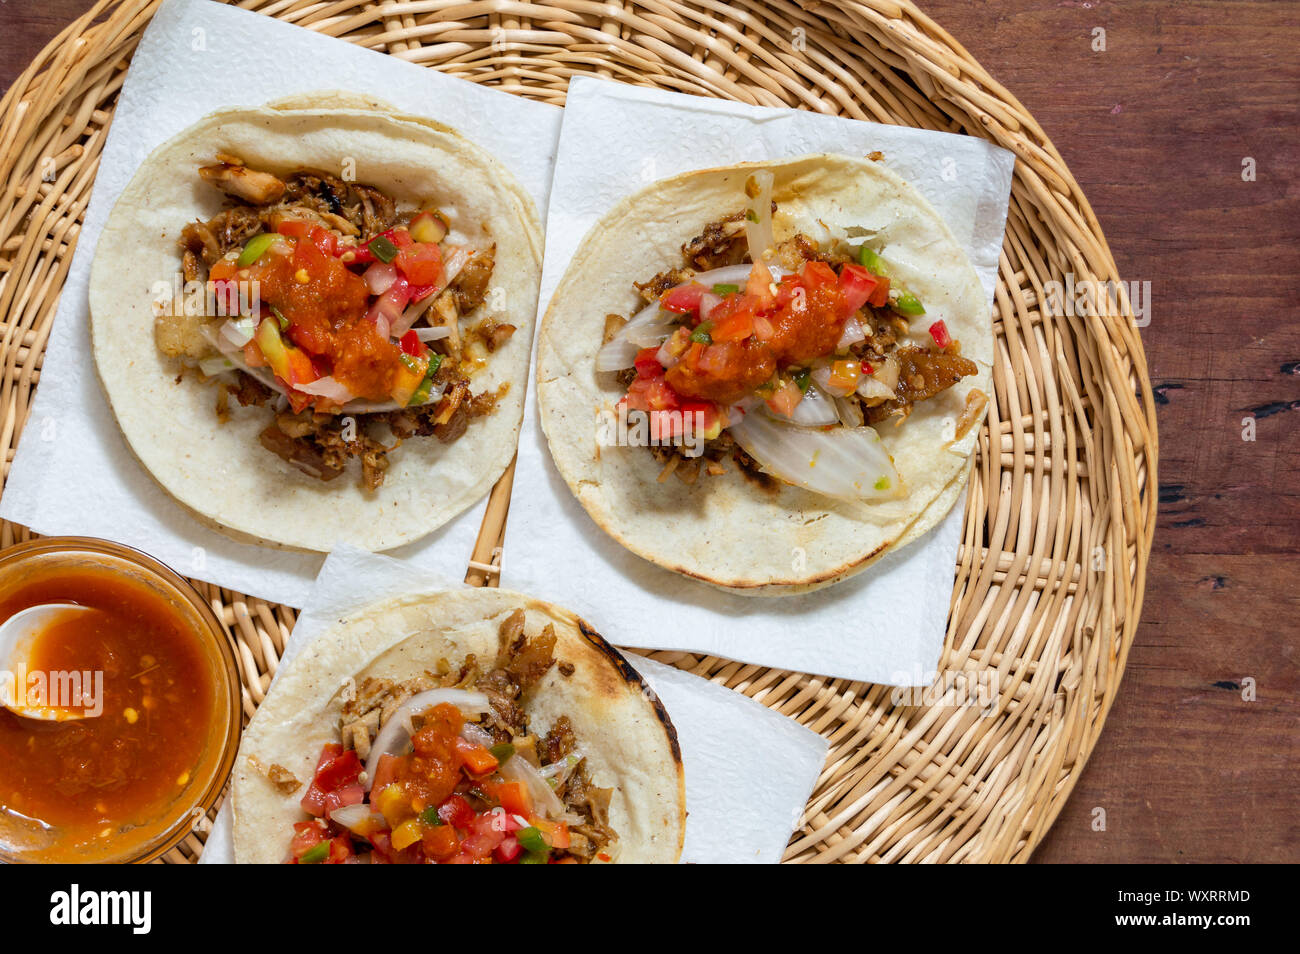 Carnitas tacos mexicains, de porc mijotés, traditionnellement à partir de l'État du Michoacán et rendu célèbre par les villes de Quiroga et Uruapan. Servi Banque D'Images